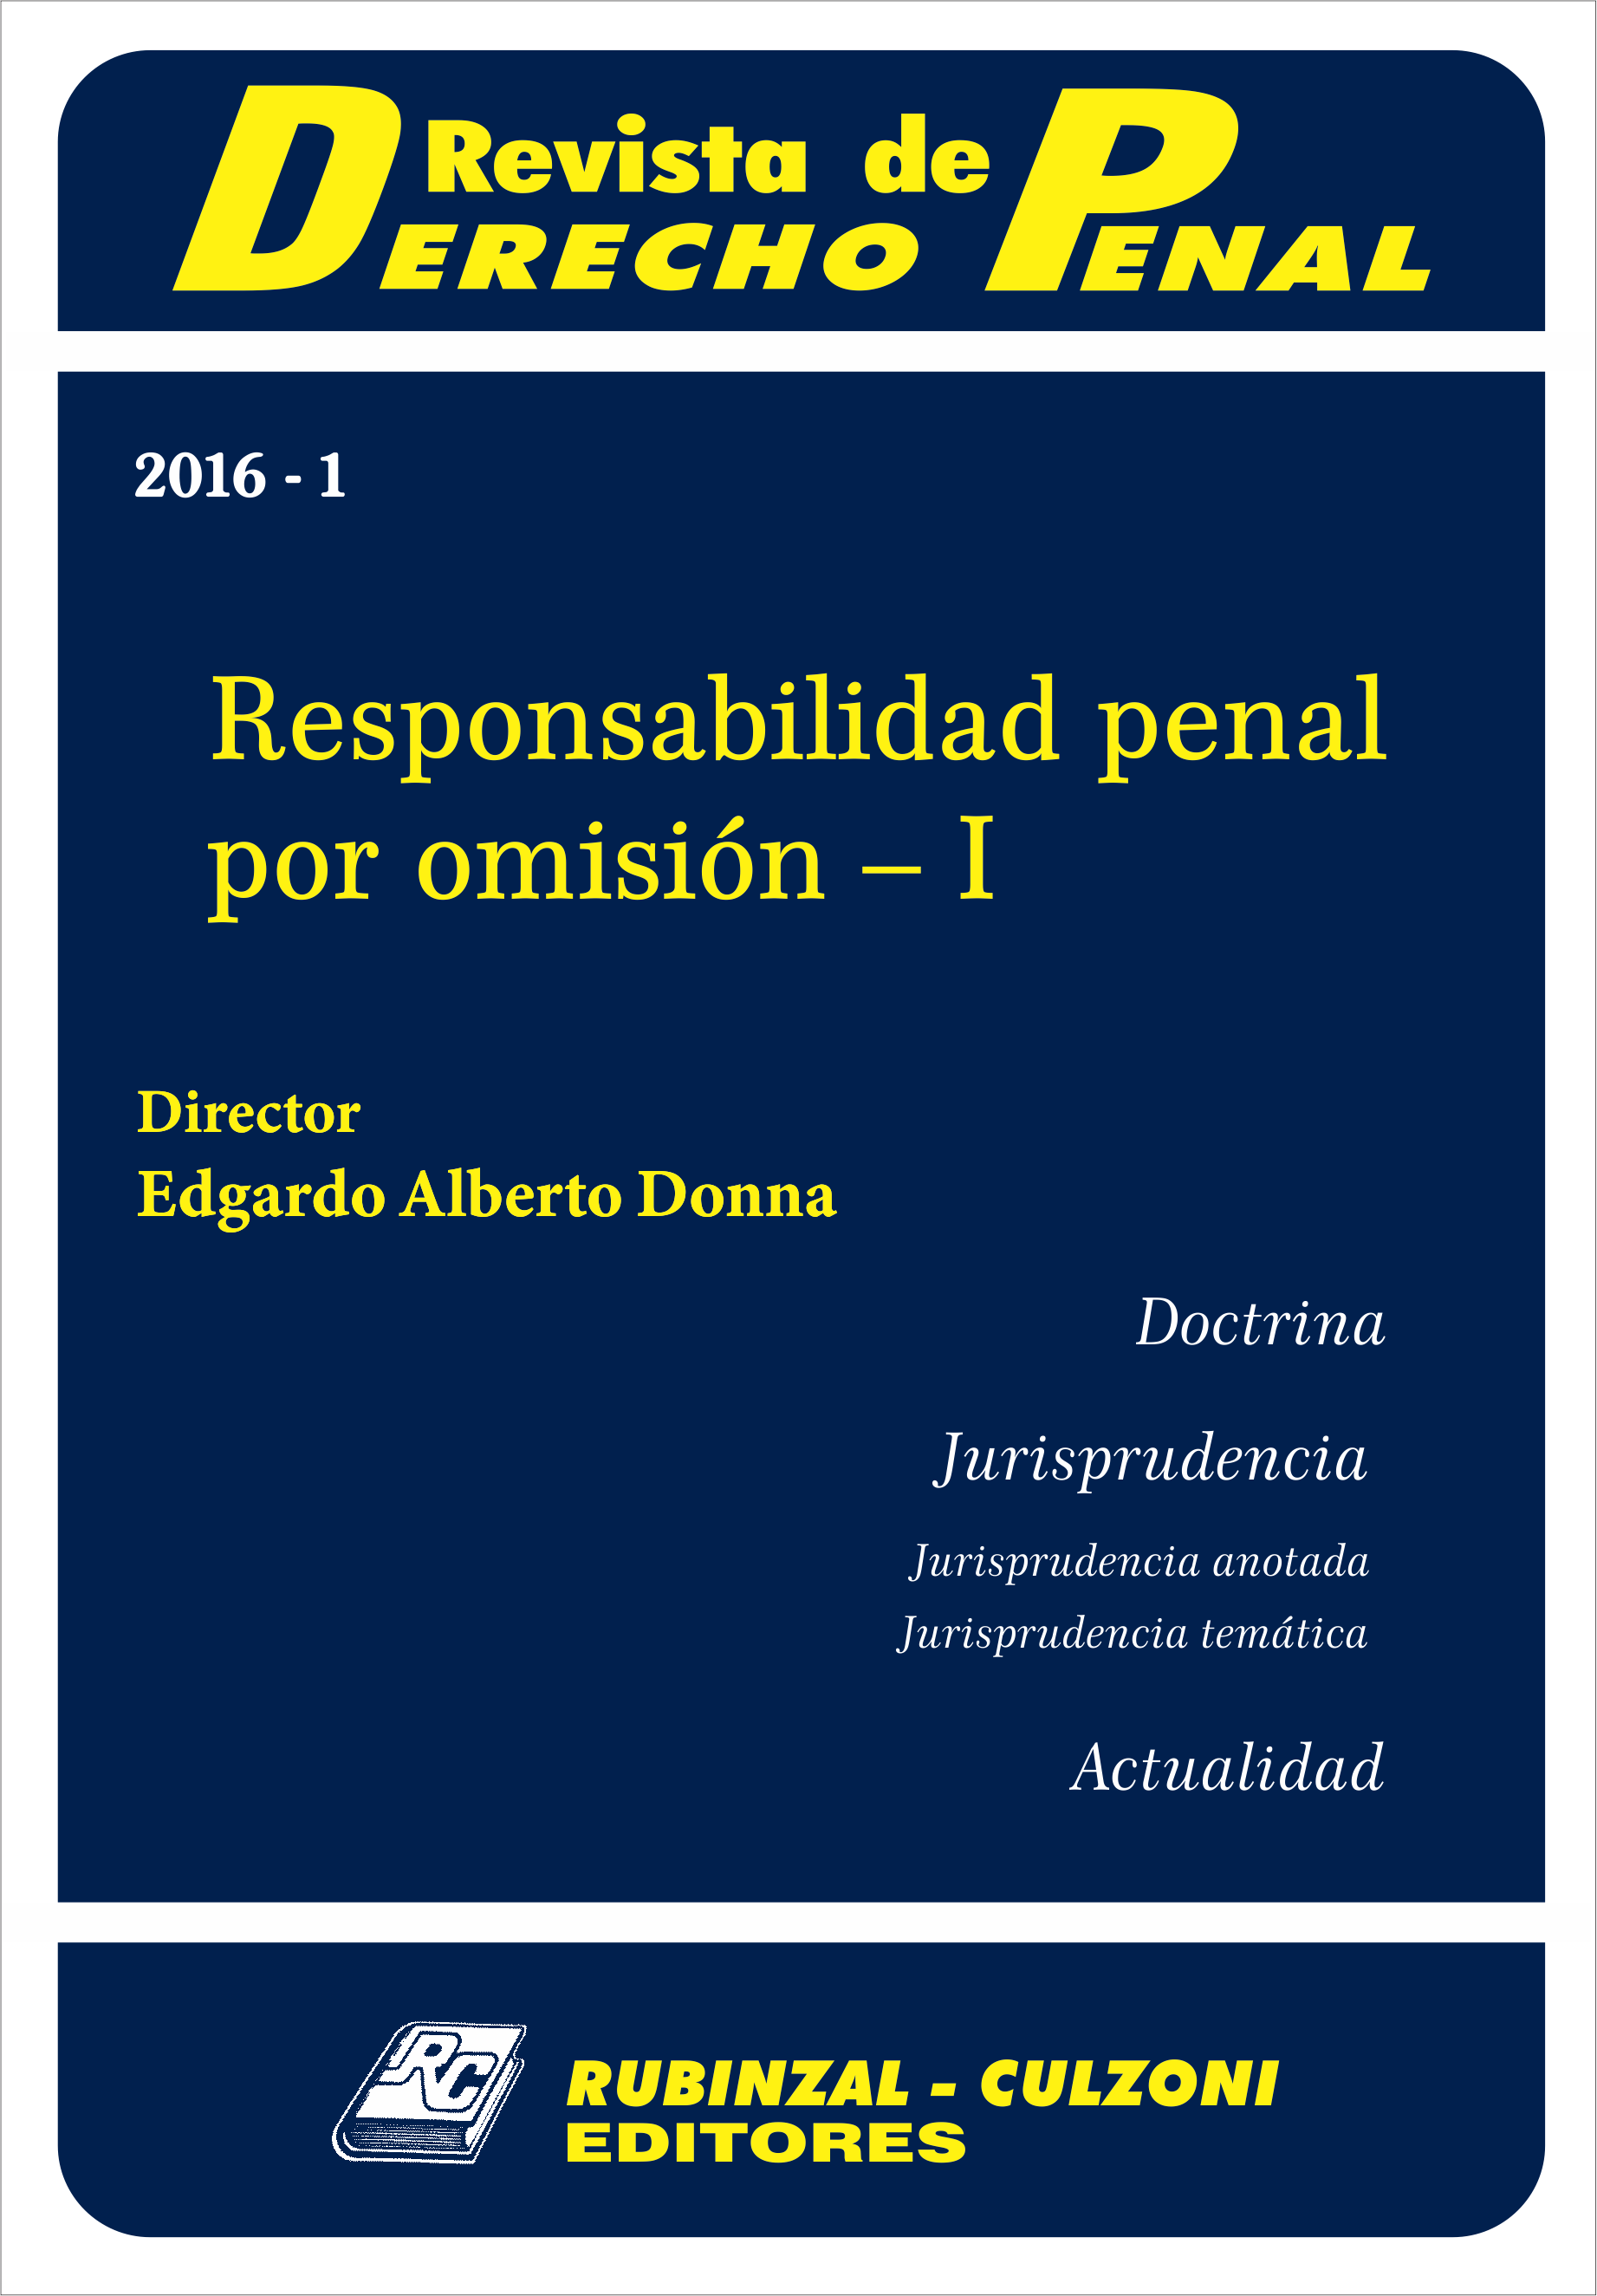 Revista de Derecho Penal - Responsabilidad penal por omisión - I